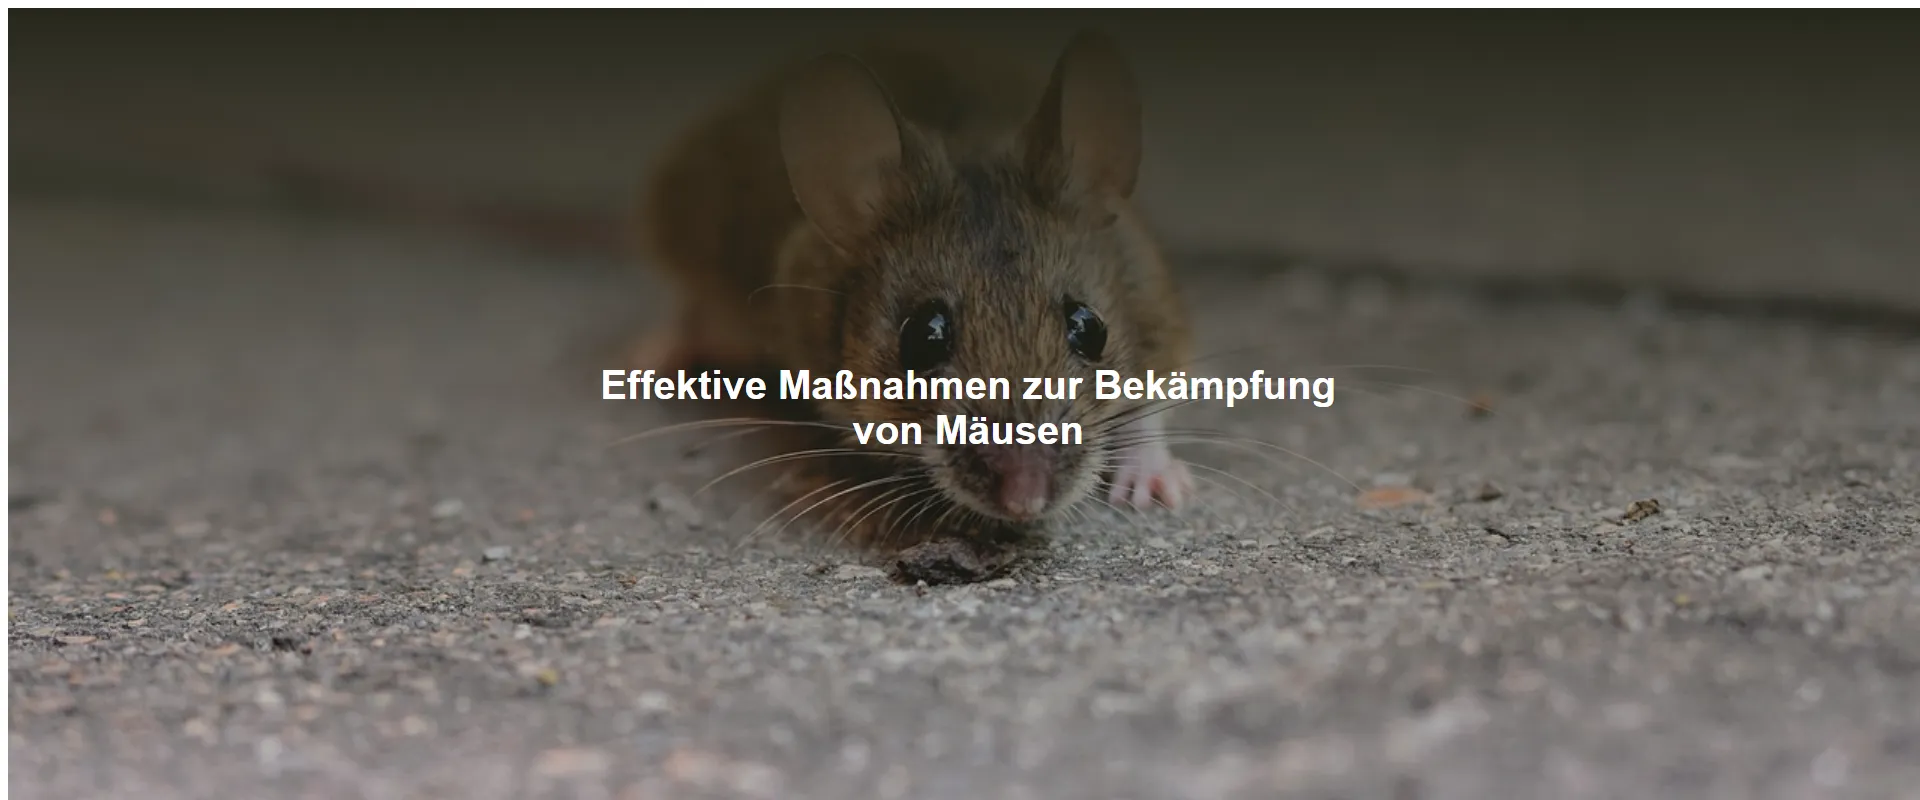 Effektive Maßnahmen zur Bekämpfung von Mäusen